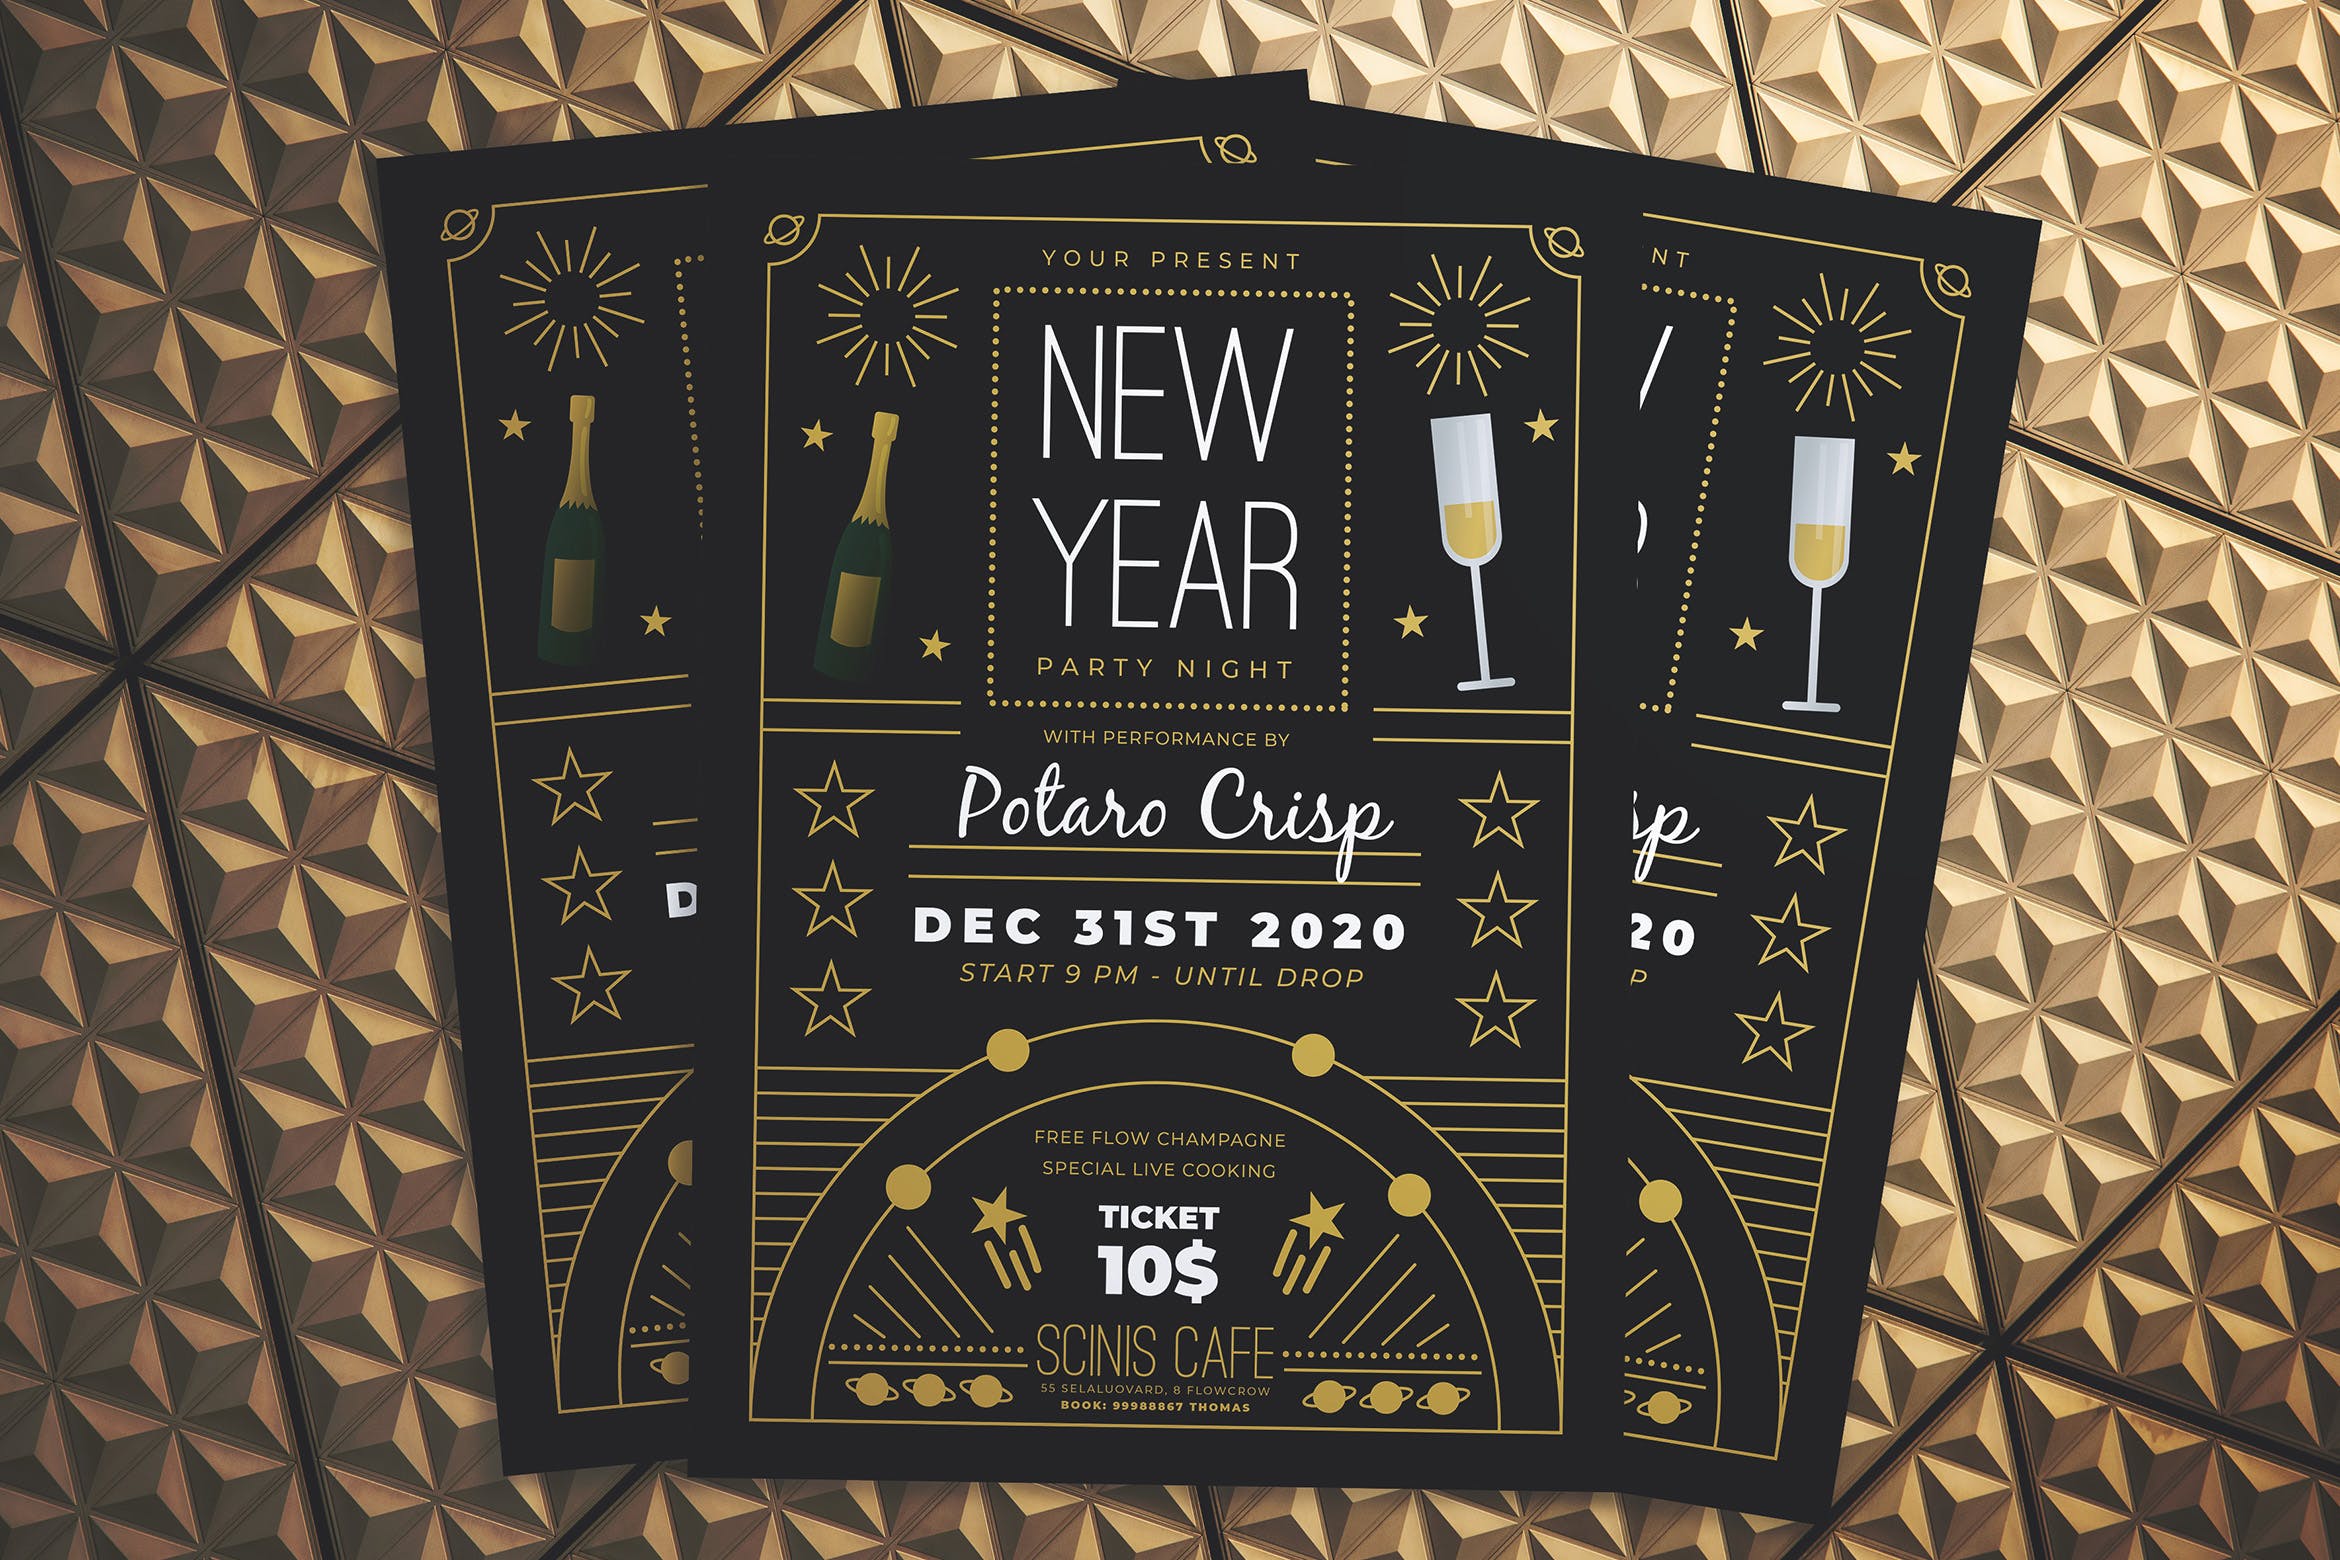 复古设计风格新年晚会海报传单蚂蚁素材精选PSD模板 New Year Party Night Flyer插图